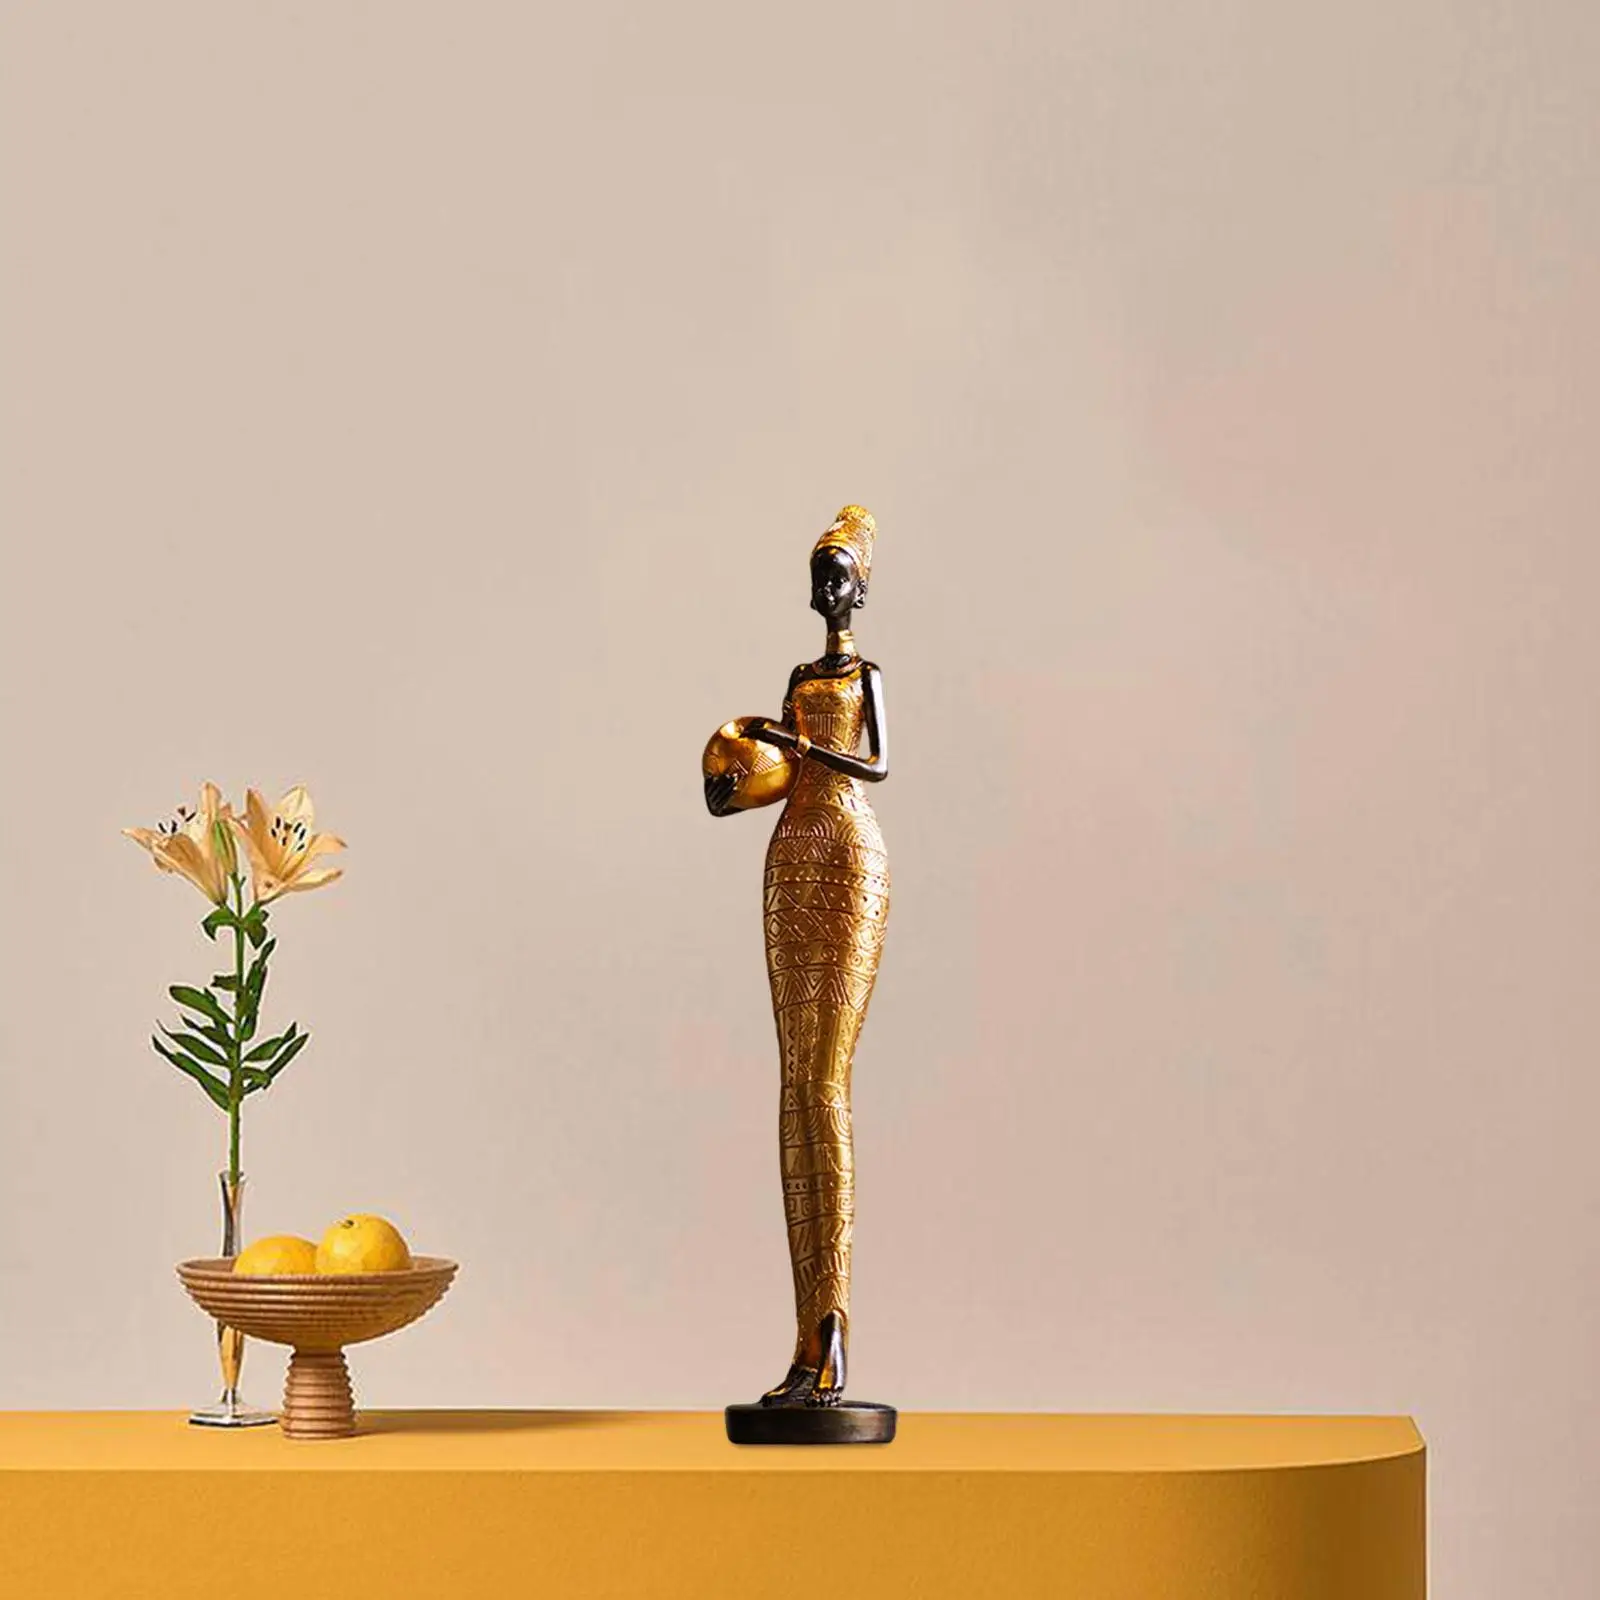 נשים פסל חידוש תפאורה הביתה פסלון אפריקאי שבטי הגברת פיסול למסעדה ליד המיטה שולחן מדף הספרים טלוויזיה ארון